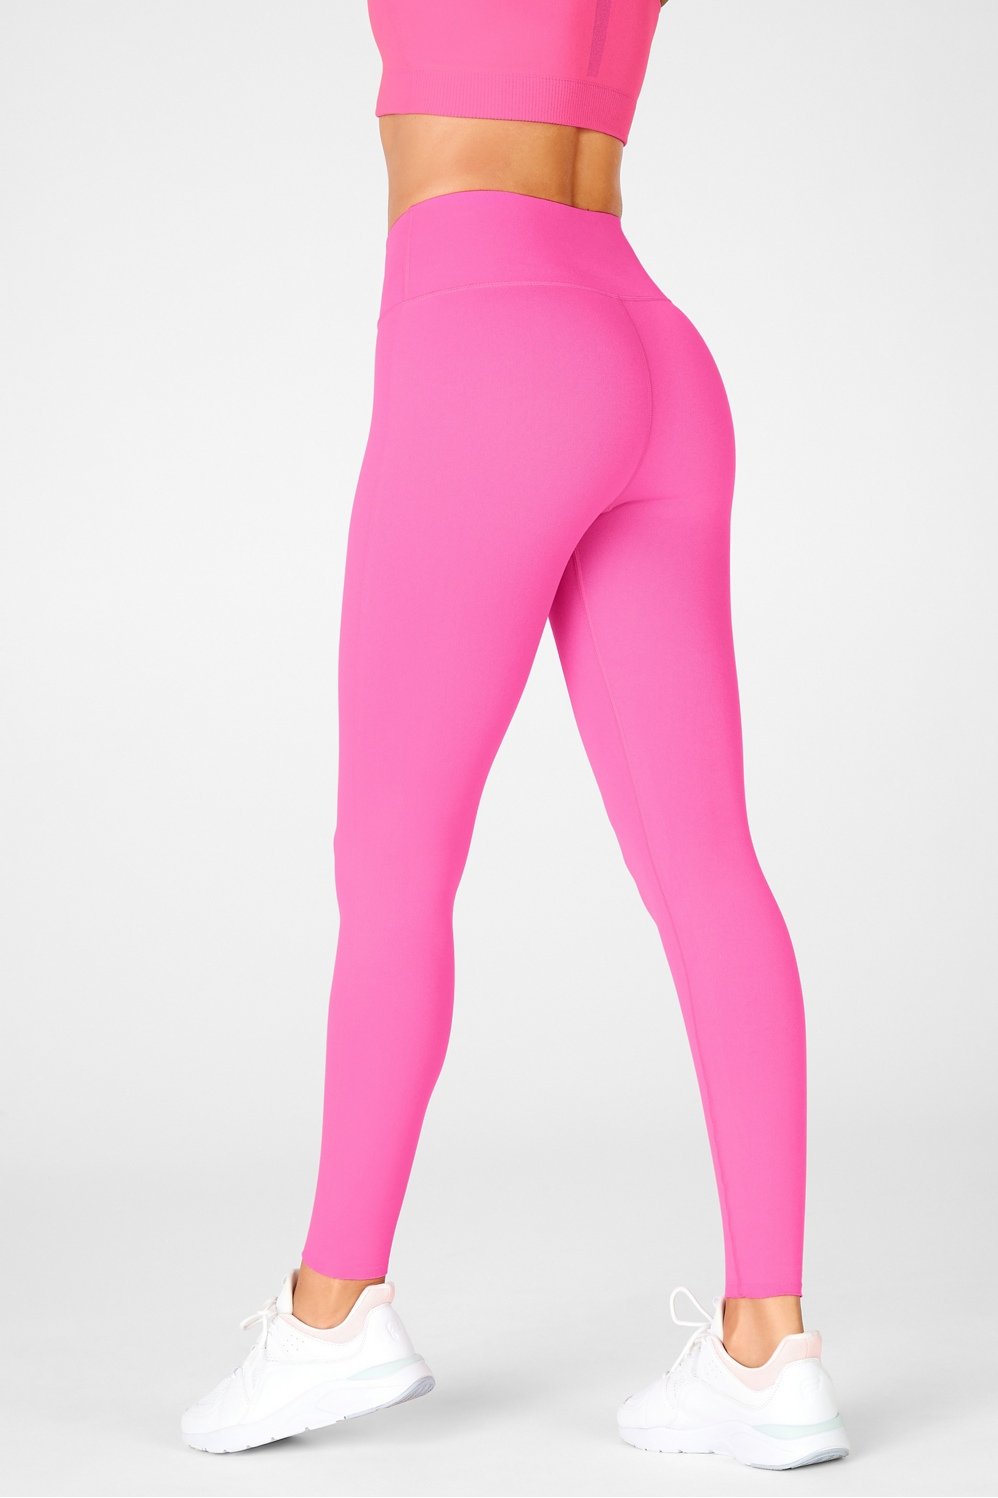 High-Rise Shimmer Pink Sports Leggings for Women - Flexmee US